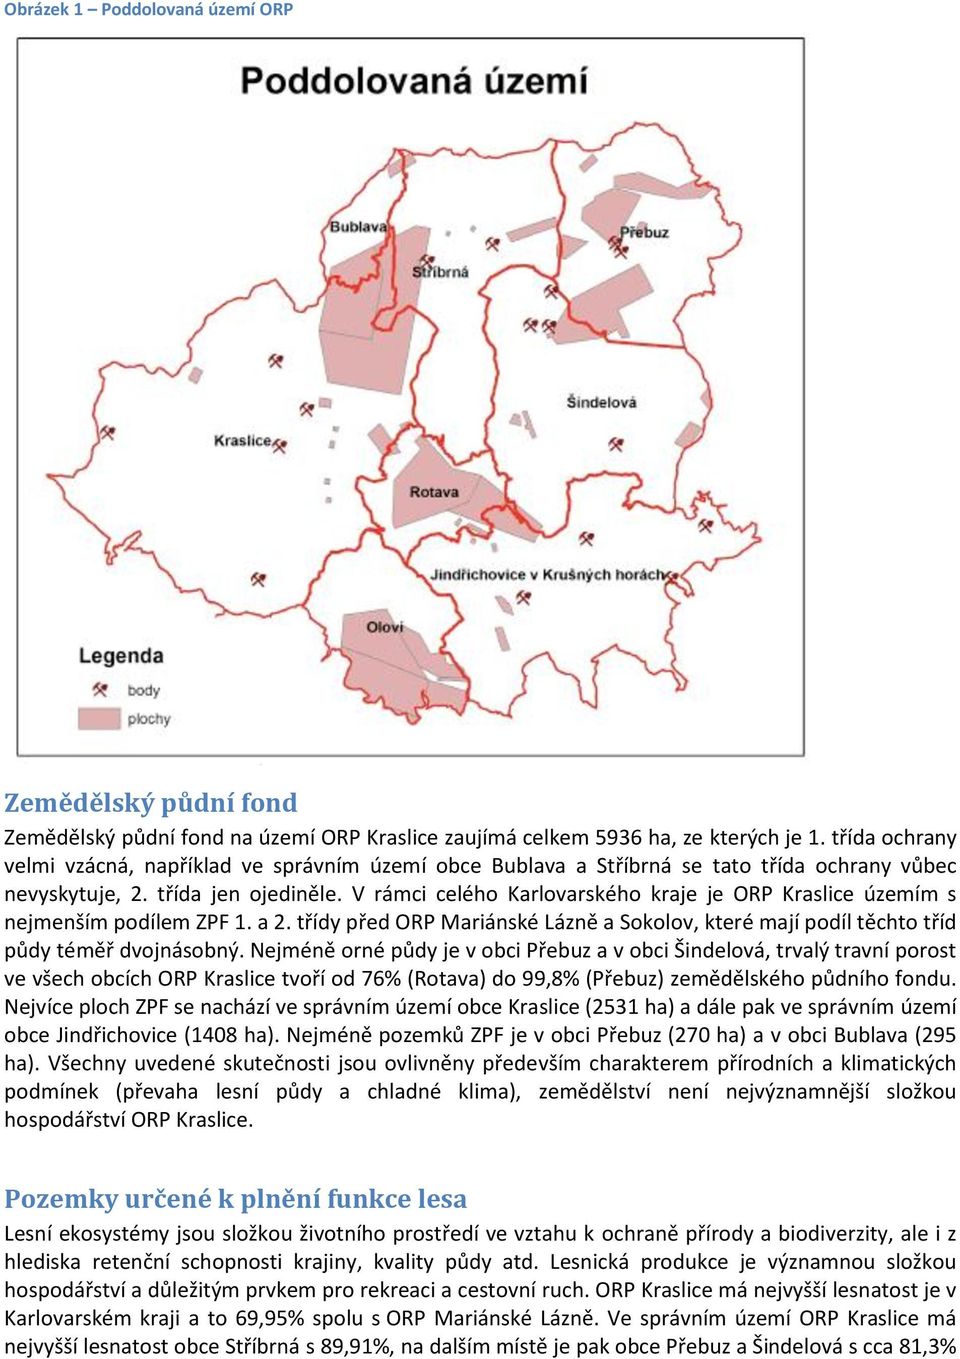 V rámci celého Karlovarského kraje je ORP územím s nejmenším podílem ZPF 1. a 2. třídy před ORP Mariánské Lázně a Sokolov, které mají podíl těchto tříd půdy téměř dvojnásobný.